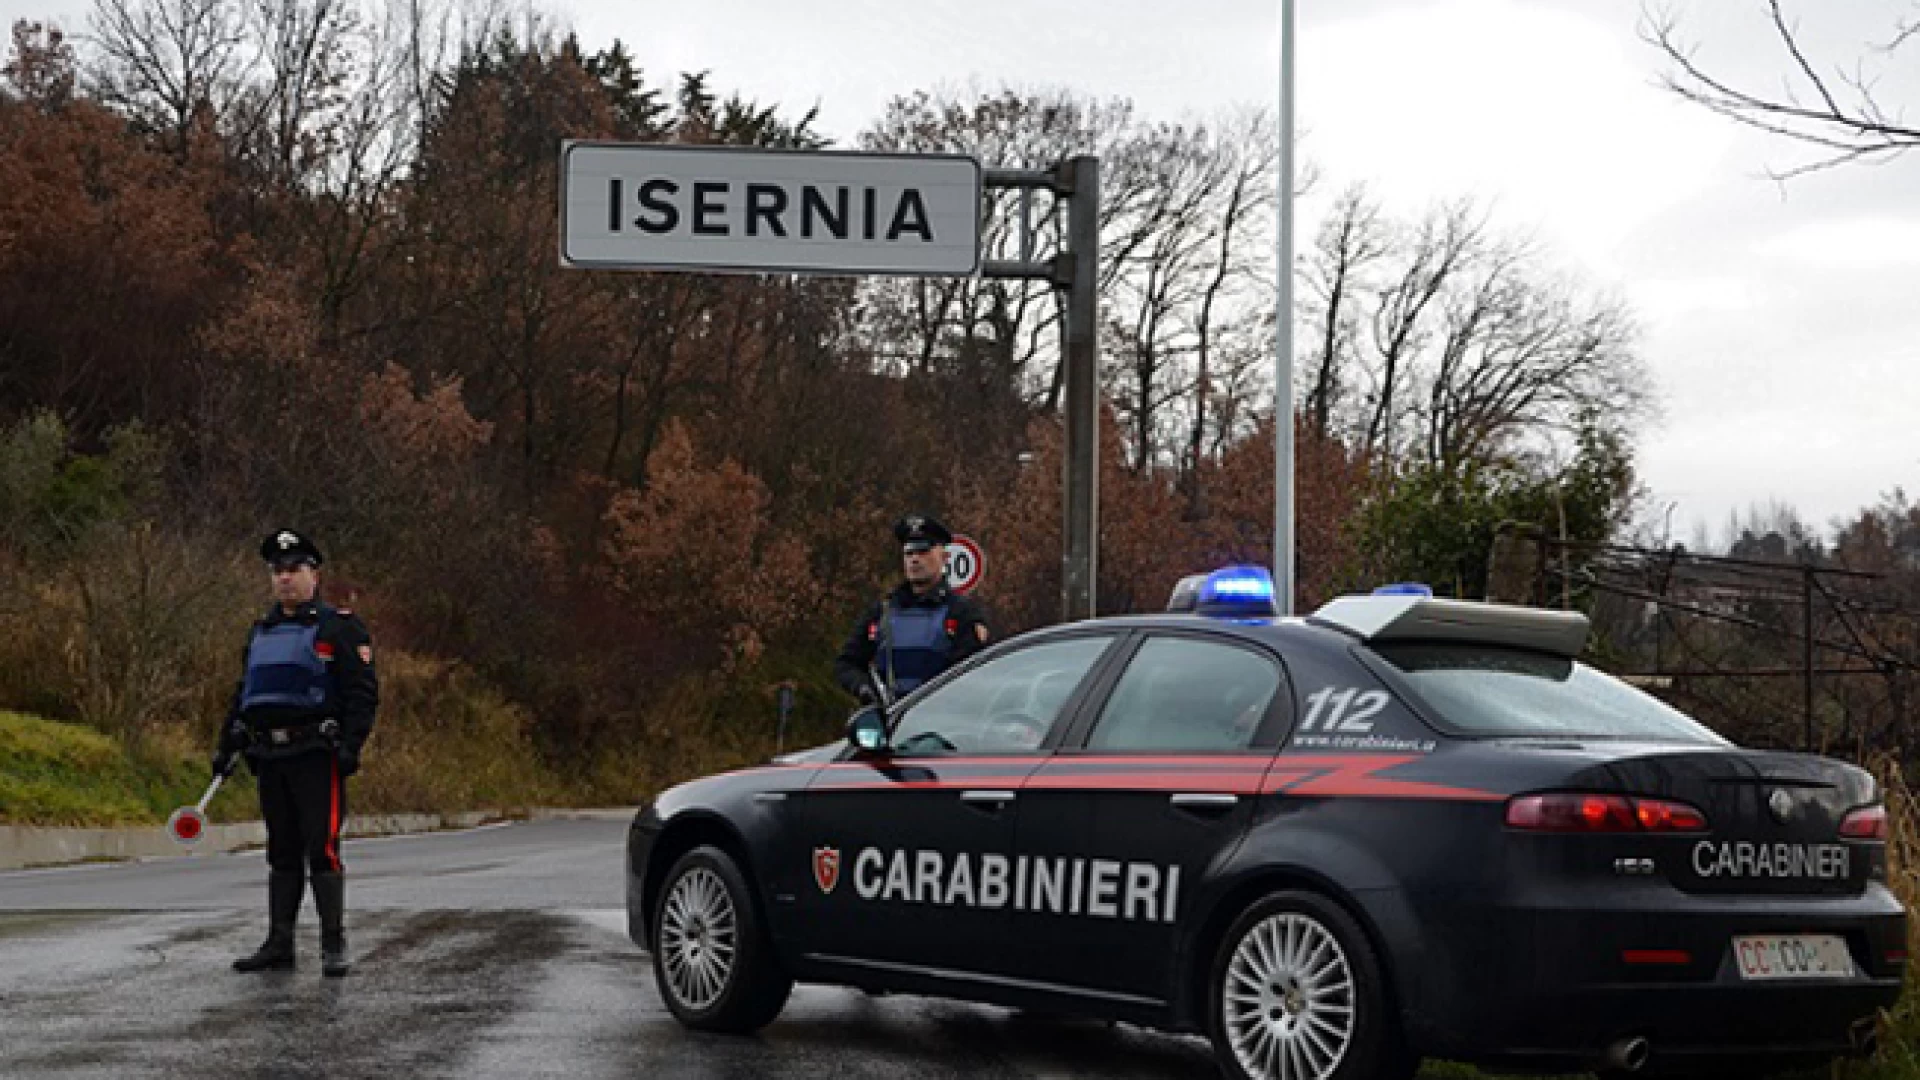 Isernia: al volante completamente ubriaca beccata dai Carabinieri giovane isernina. Patente ritirata